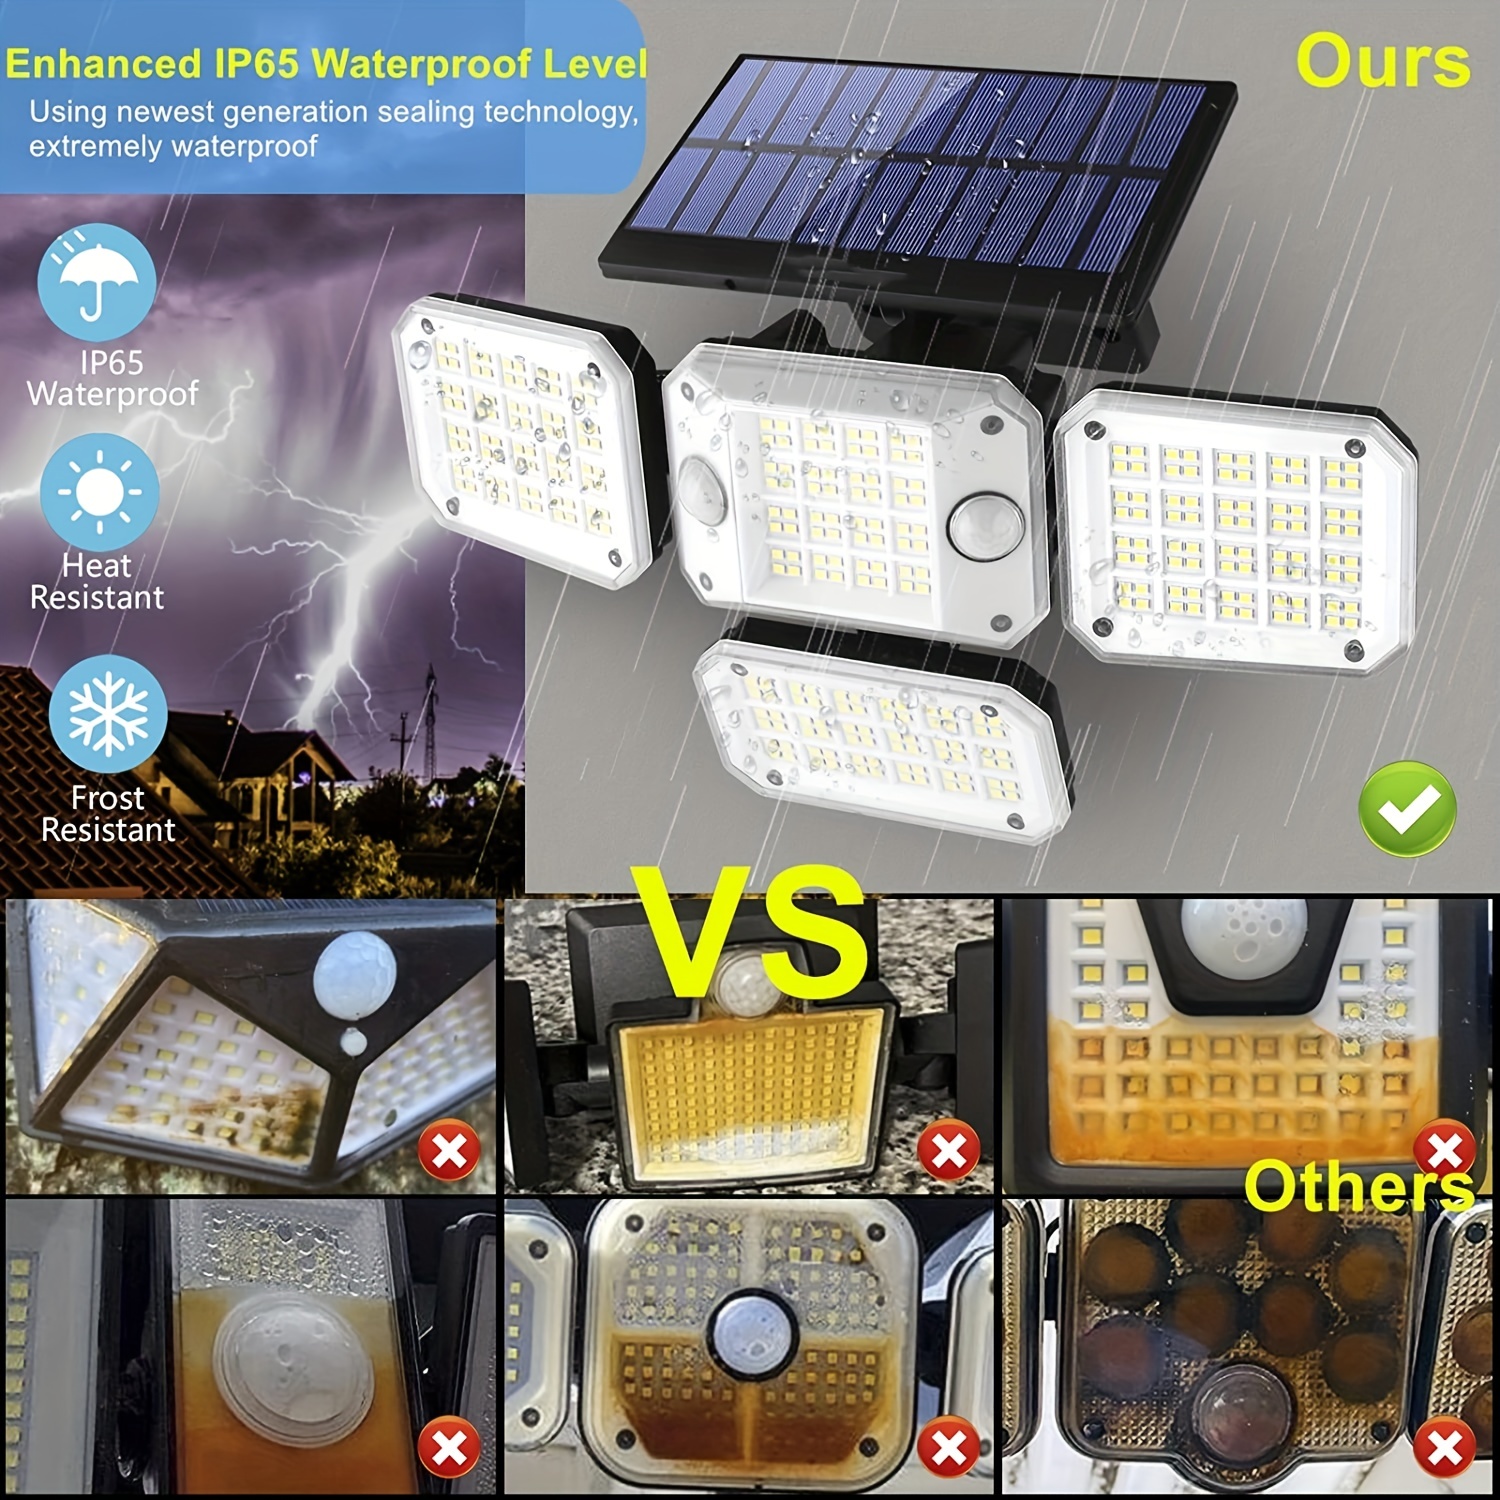 Kit Eclairage Solaire 3 à 4 Lampes - Kit eclairage solaire